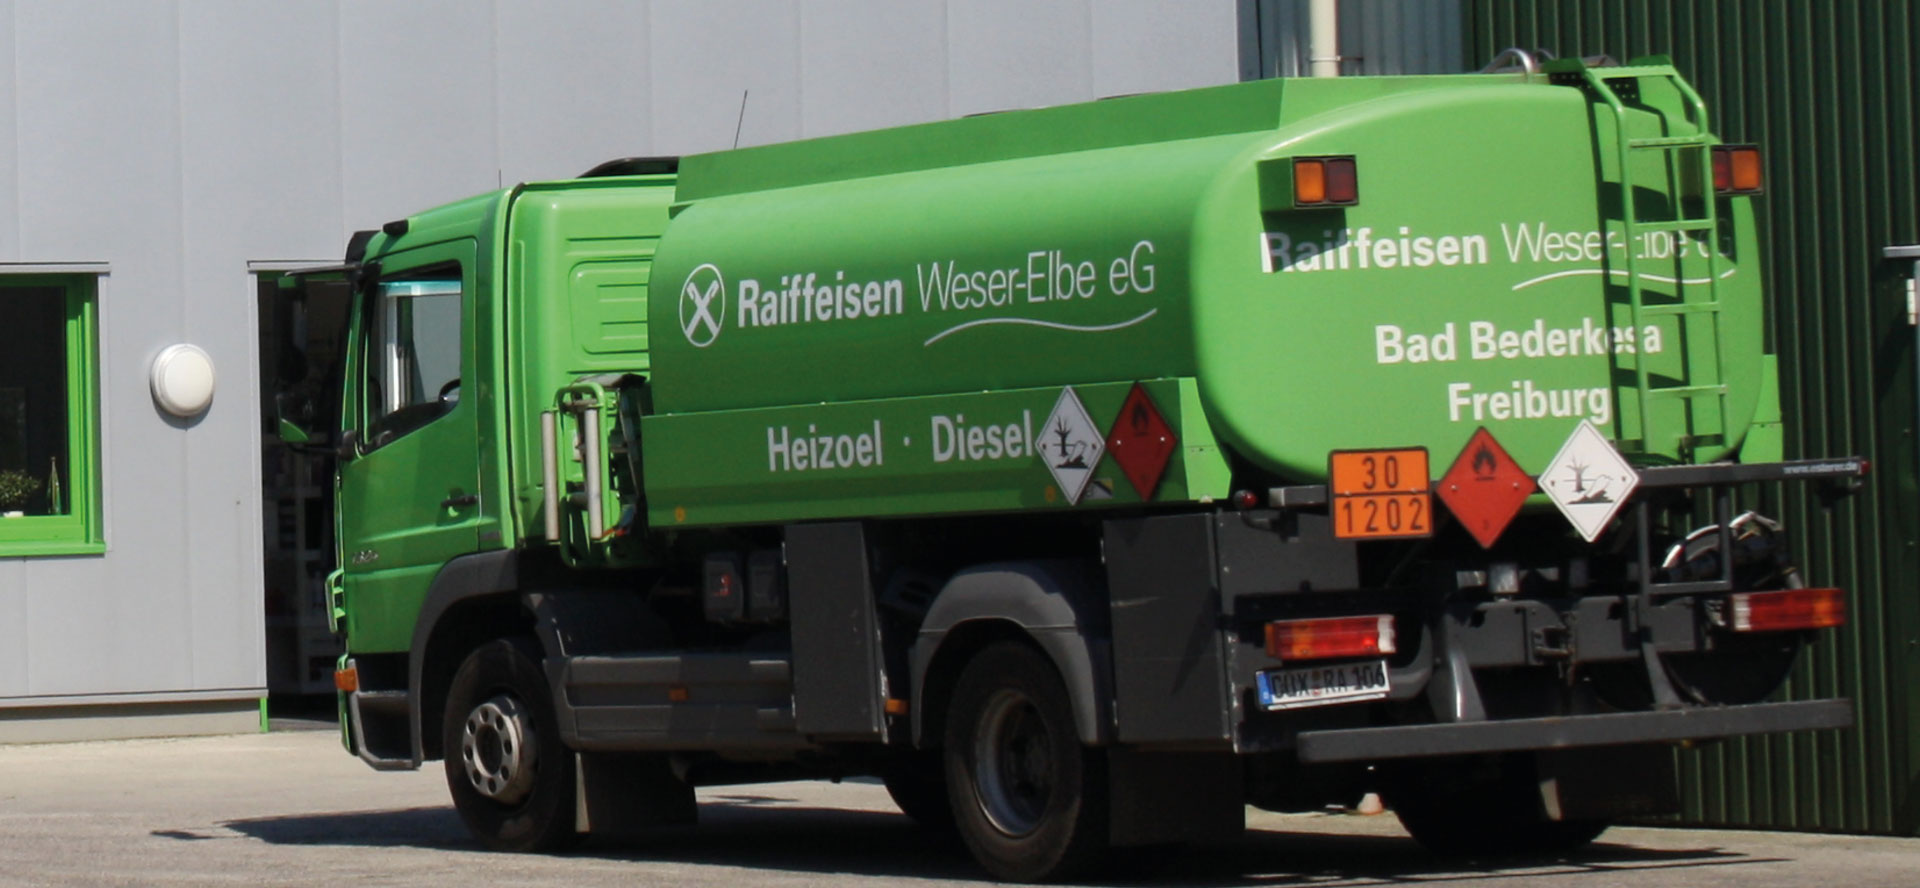 Raiffeisen Weser-Elbe eG - Heizöl / Diesel